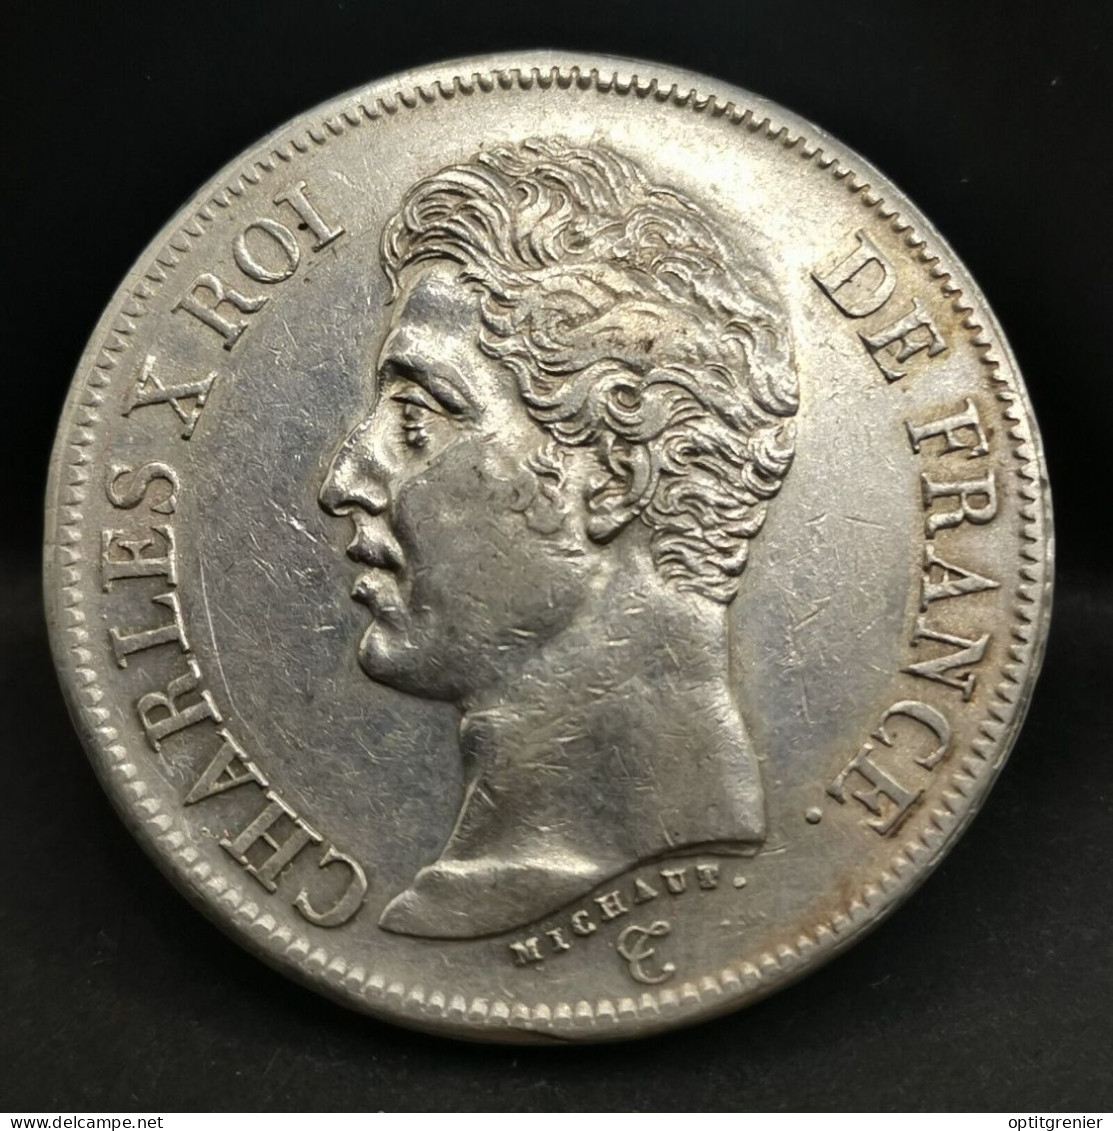 5 FRANCS ARGENT 1826 W LILLE CHARLES X 1er TYPE / FRANCE SILVER - 5 Francs